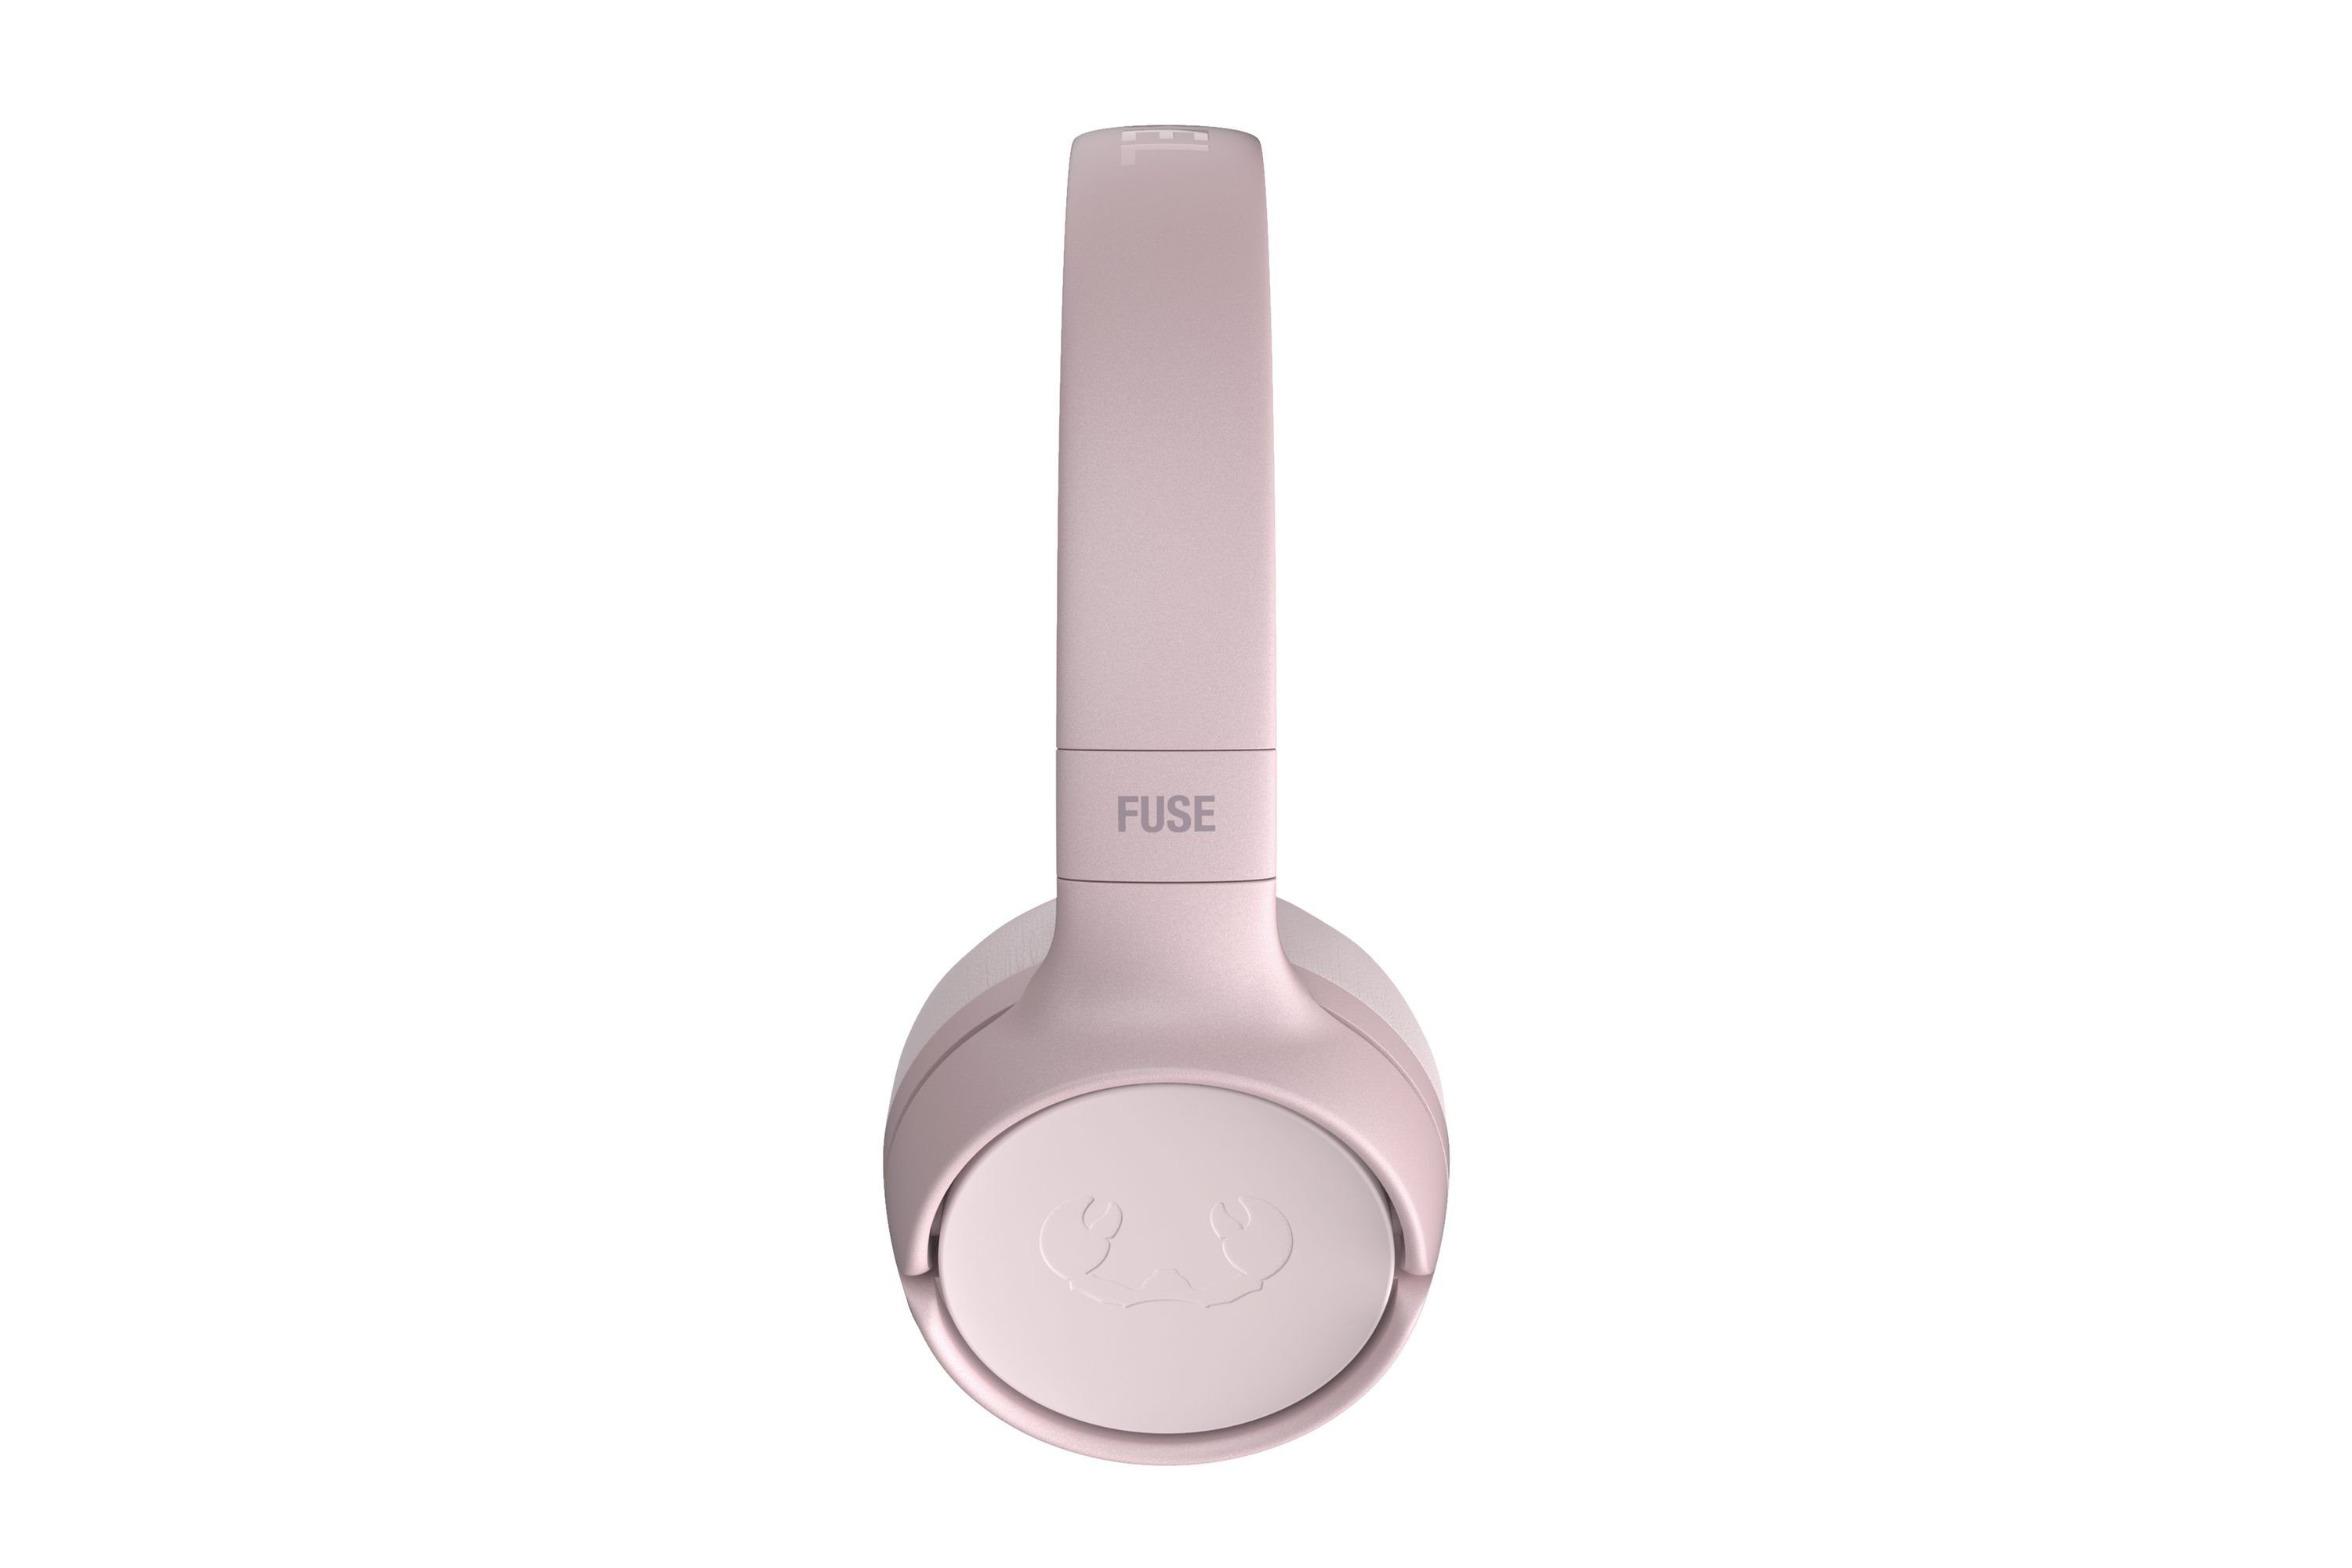 Lange zu Stunden) wireless Fresh´n Rebel Kopfhörer Wiedergabezeit: Faltbares Bis 30 Pink Design, Fuse (Kabellose Smokey Code Freiheit,